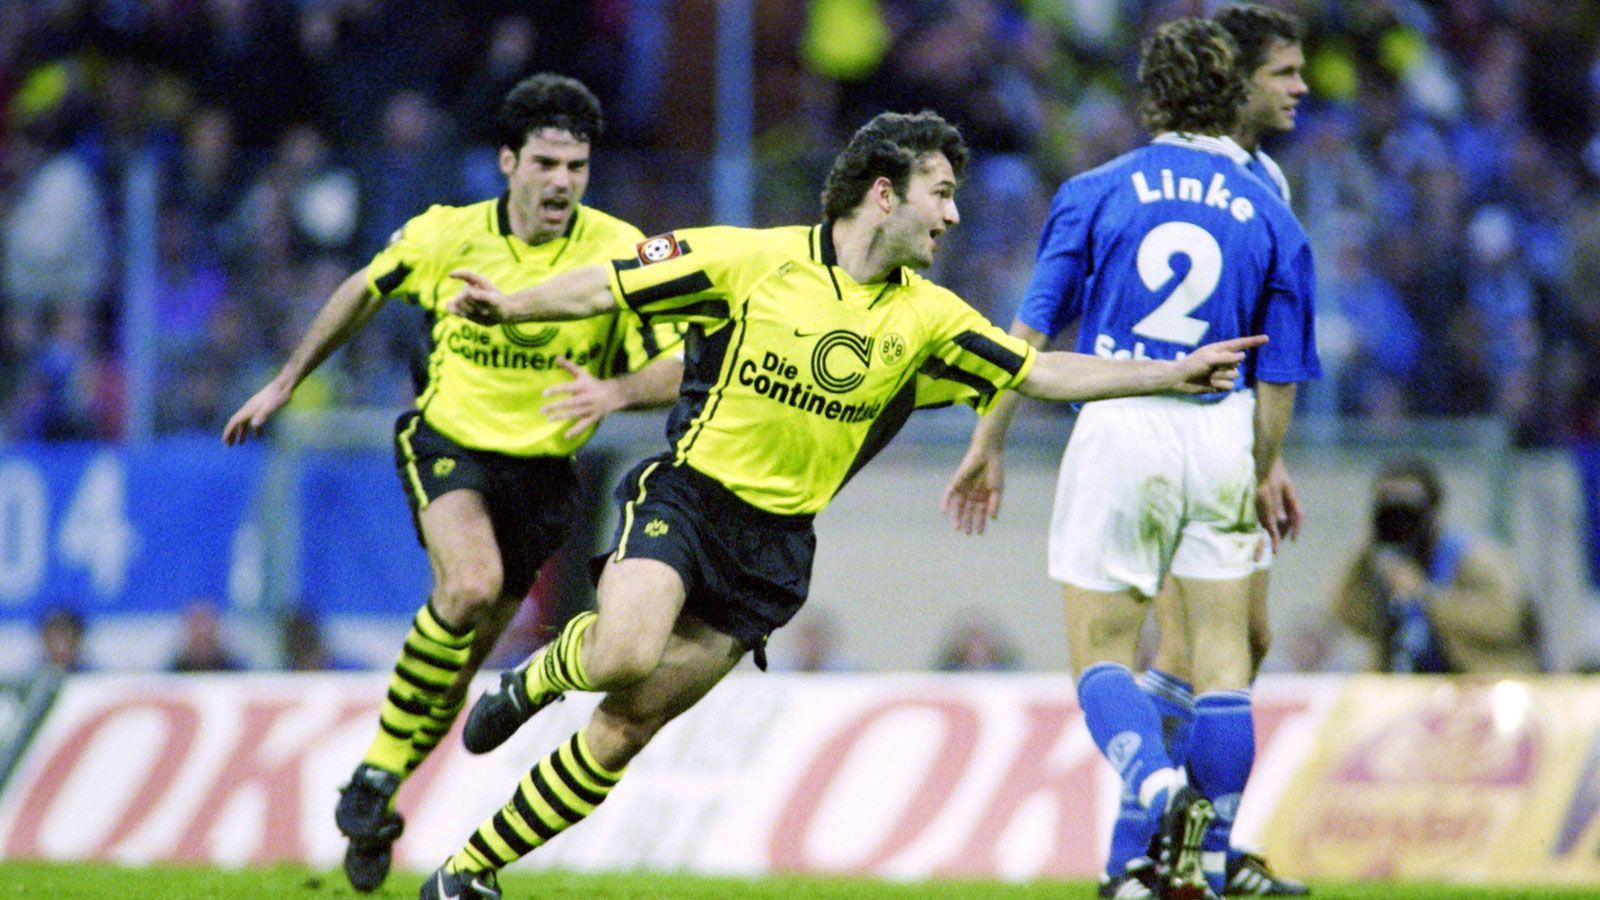 
                <strong>CL-Sieger und Derbysieger</strong><br>
                Trotz UEFA-Cup-Sieg: Das Jahr 1997 ist für Schalke aus Derby-Sicht besonders bitter. Die "Königsblauen" müssen nicht nur mit ansehen, wie die Borussia aus Dortmund die Champions League gewinnt, auch im Derby geht der BVB in der Saison 1996/97 zwei Mal als Sieger vom Platz.
              